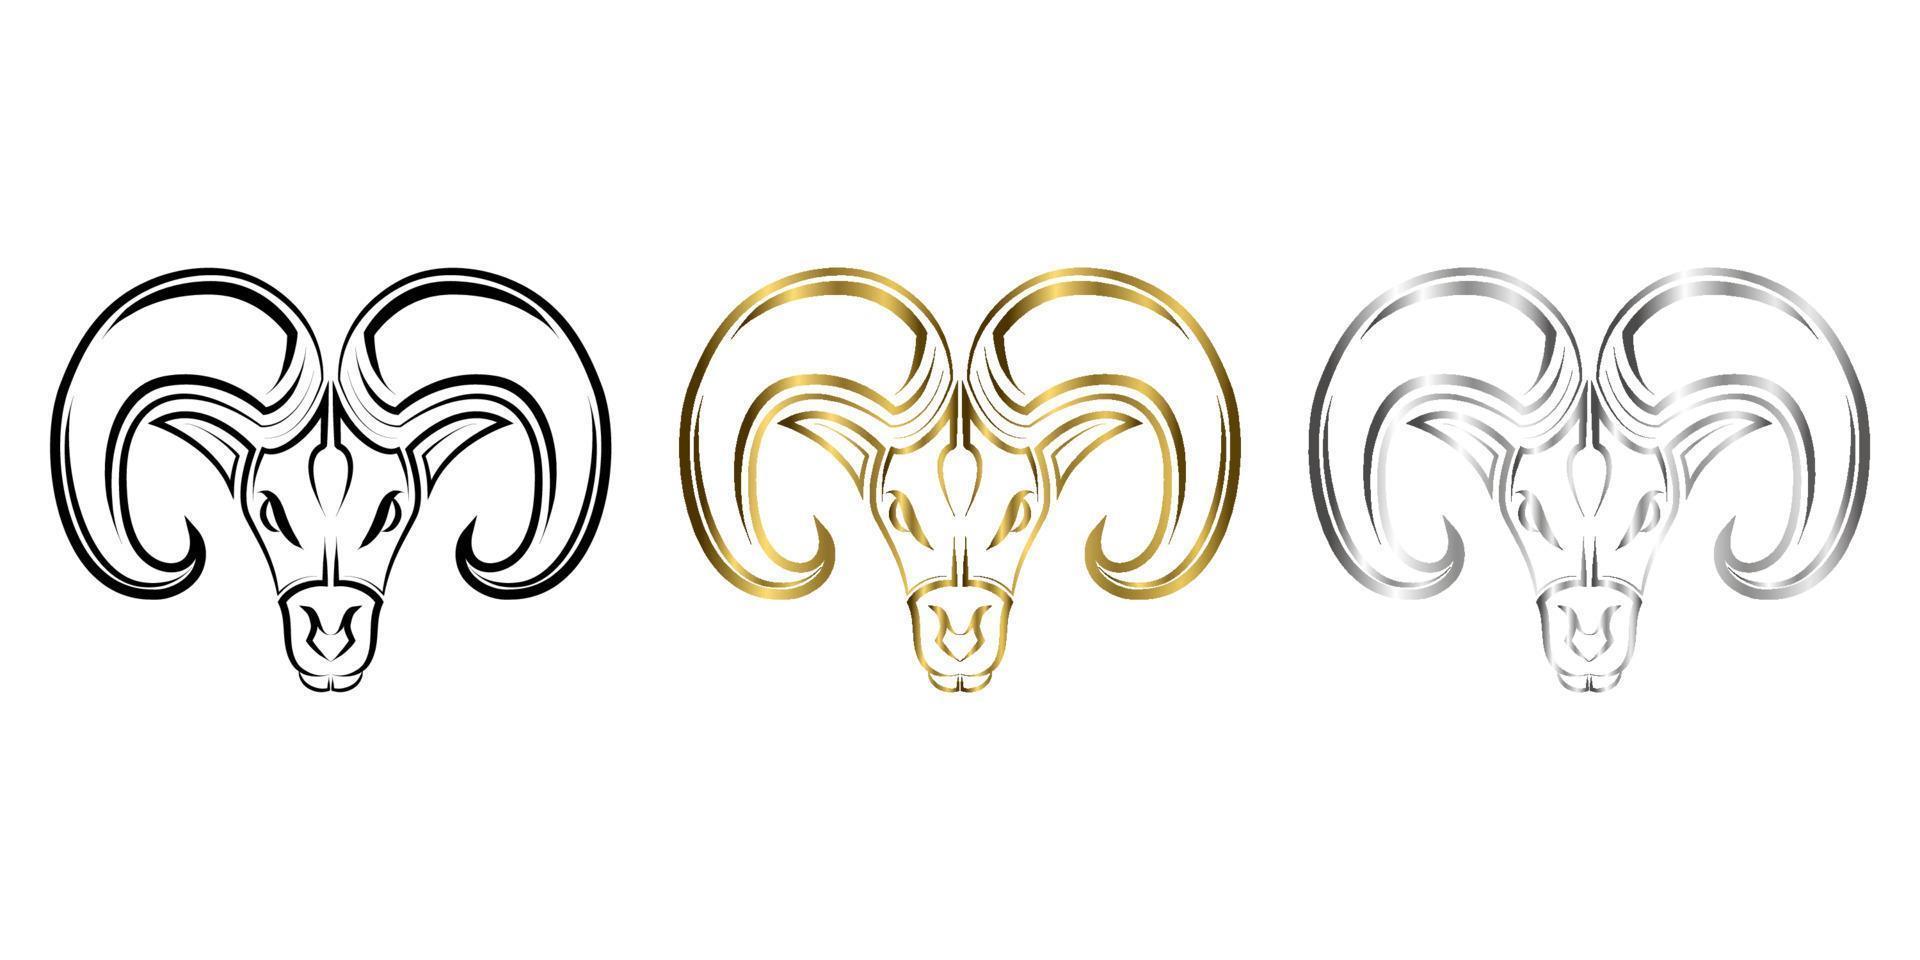 drie kleuren zwart goud en zilver lijntekeningen van het hoofd van Barbarijse schapen. goed gebruik voor symbool, mascotte, pictogram, avatar, tatoeage, t-shirtontwerp, logo of elk gewenst ontwerp. vector